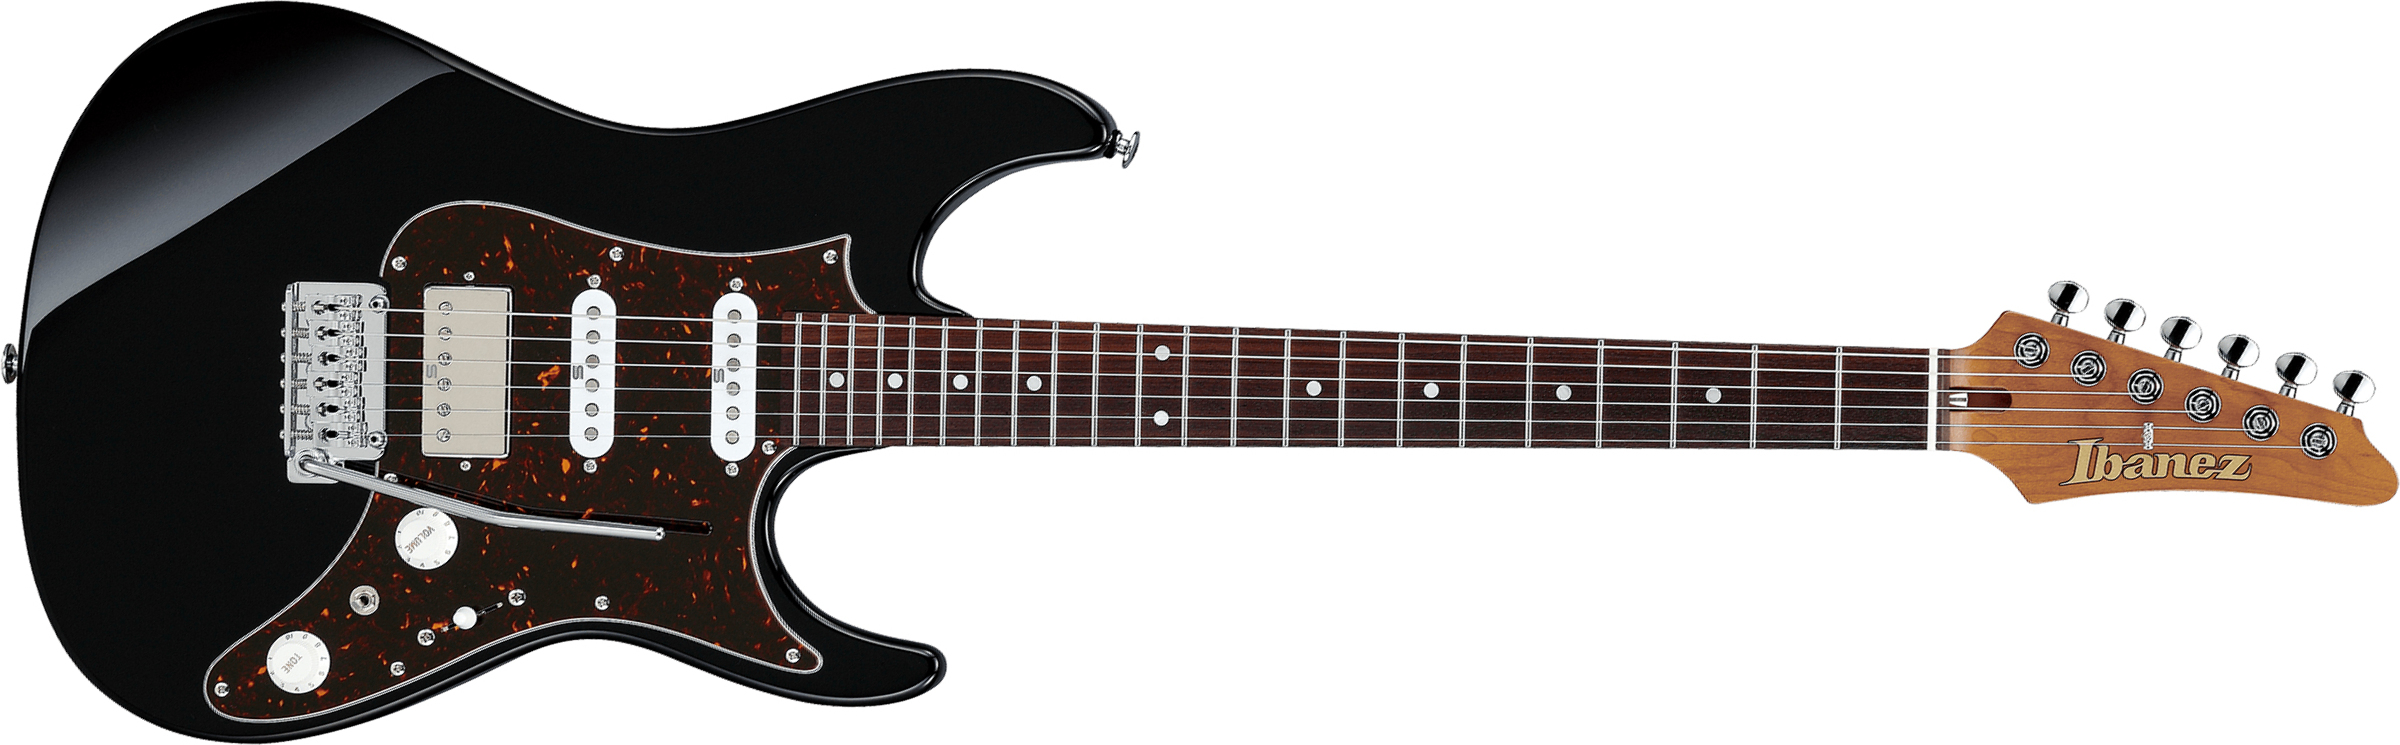 Ibanez Az2204n Bk Prestige Jap Hss Seymour Duncan Trem Rw - Black - Str shape electric guitar - Main picture